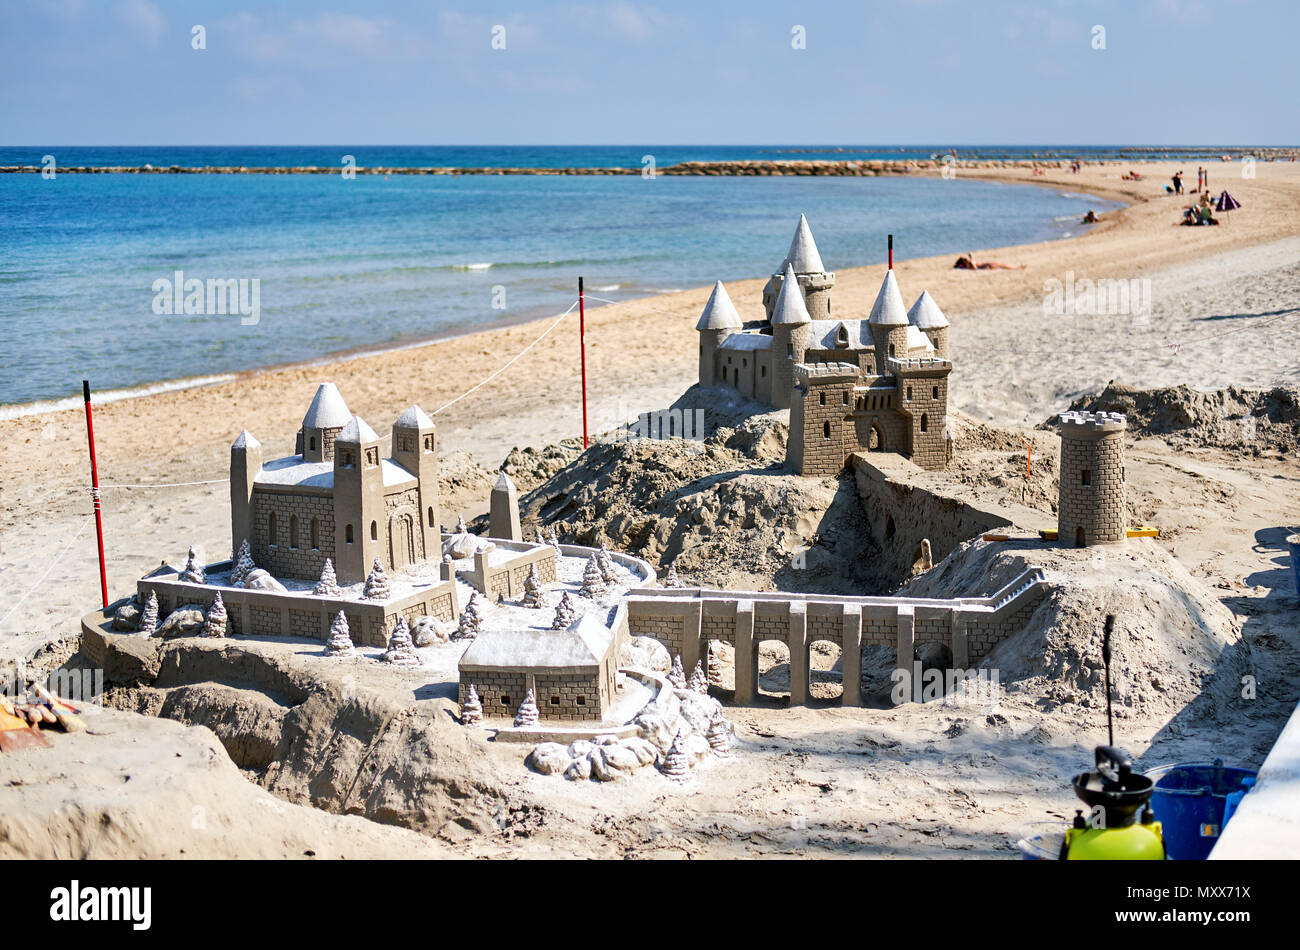 Castello di sabbia sulla spiaggia di El Campello. El Campello è una cittadina della Costa Blanca. Alicante. Spagna Foto Stock